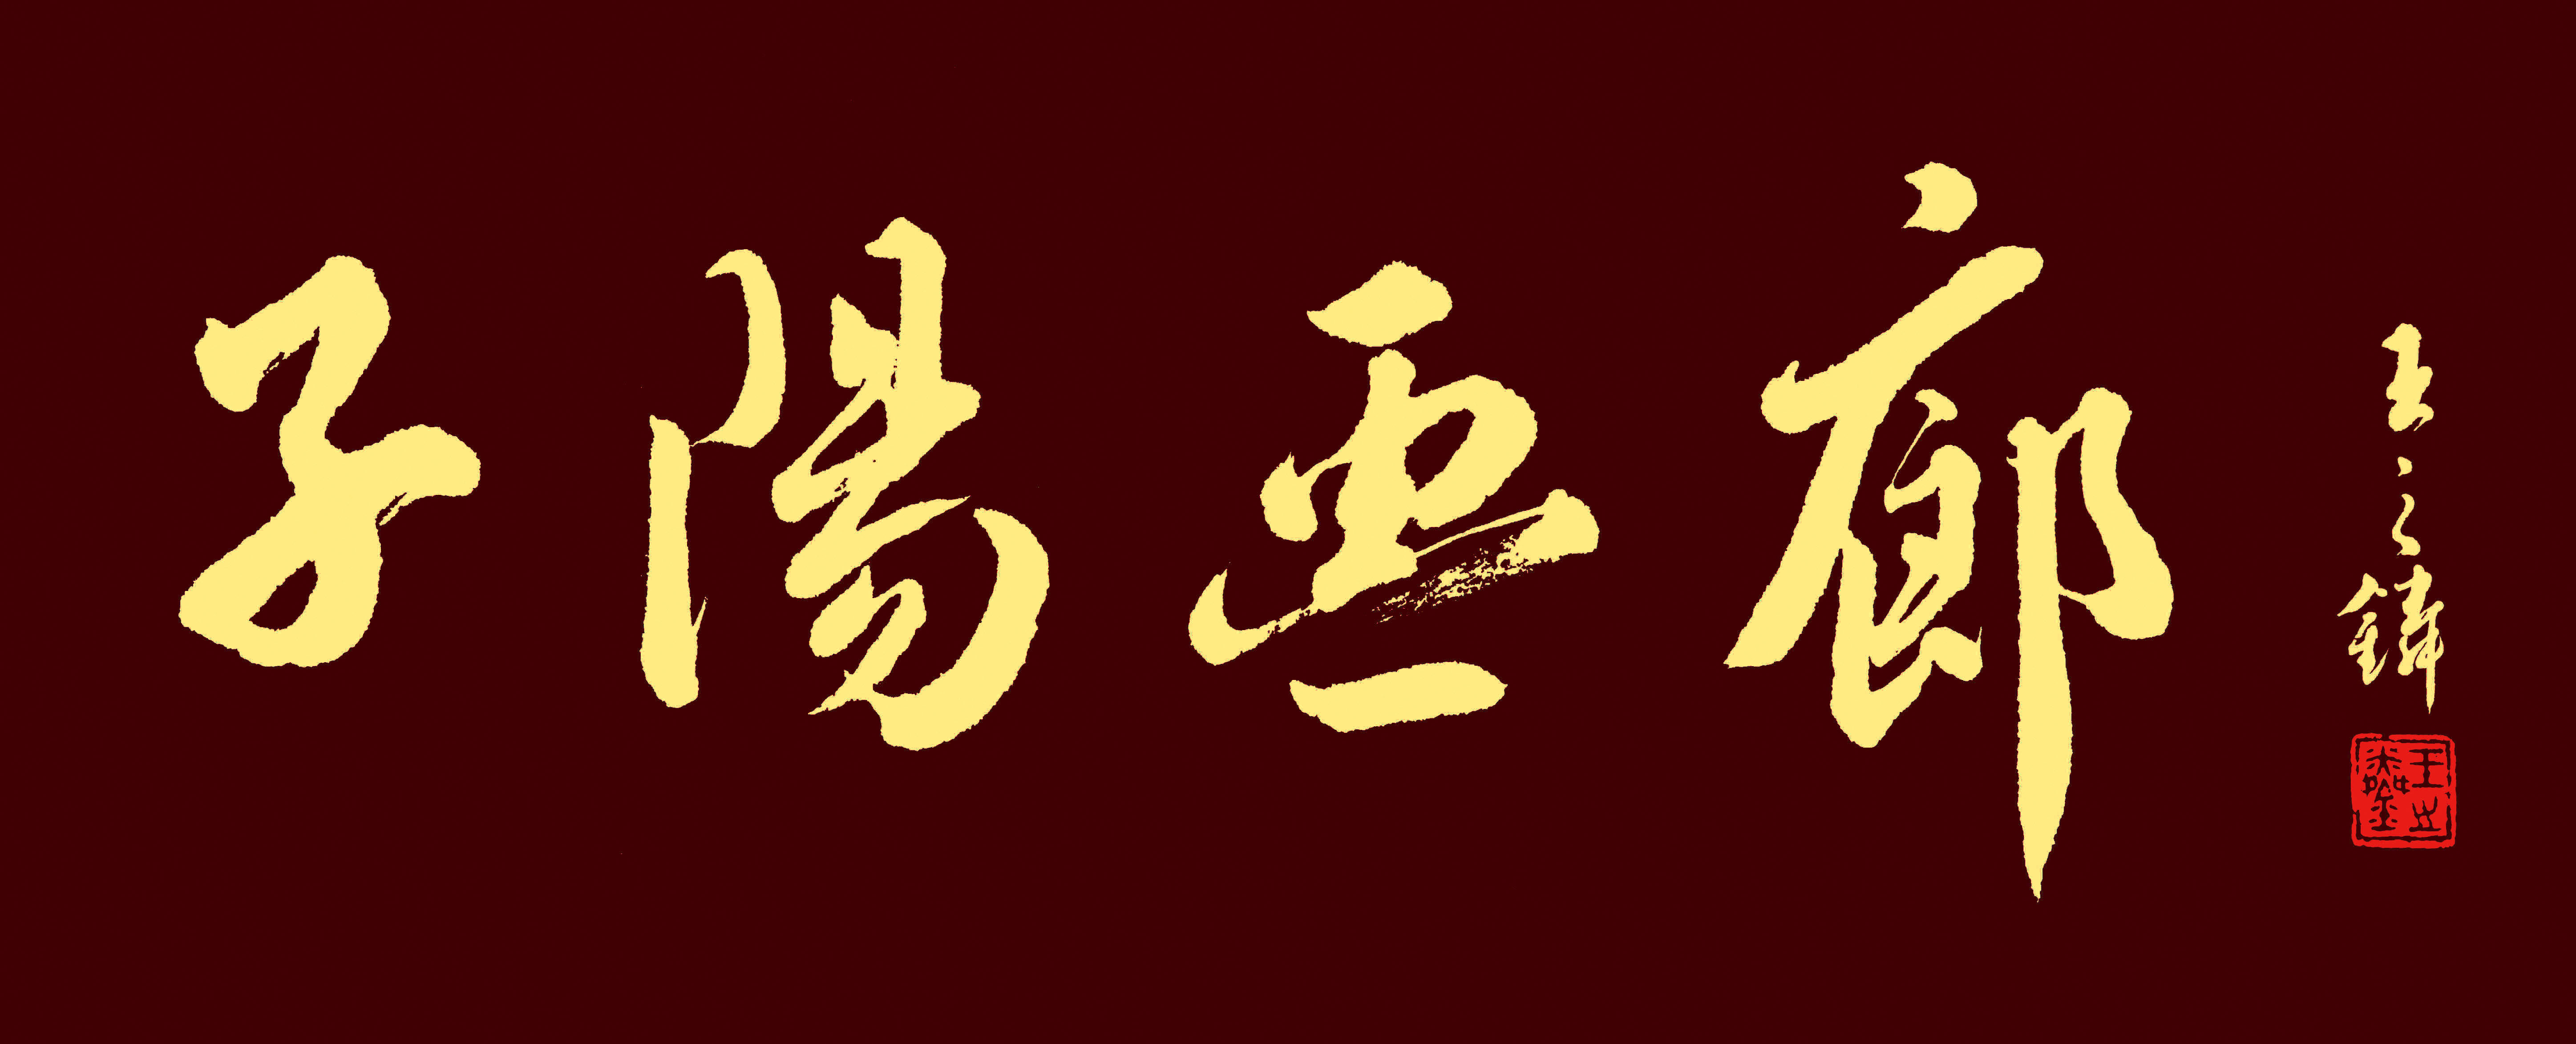 子阳画廊logo